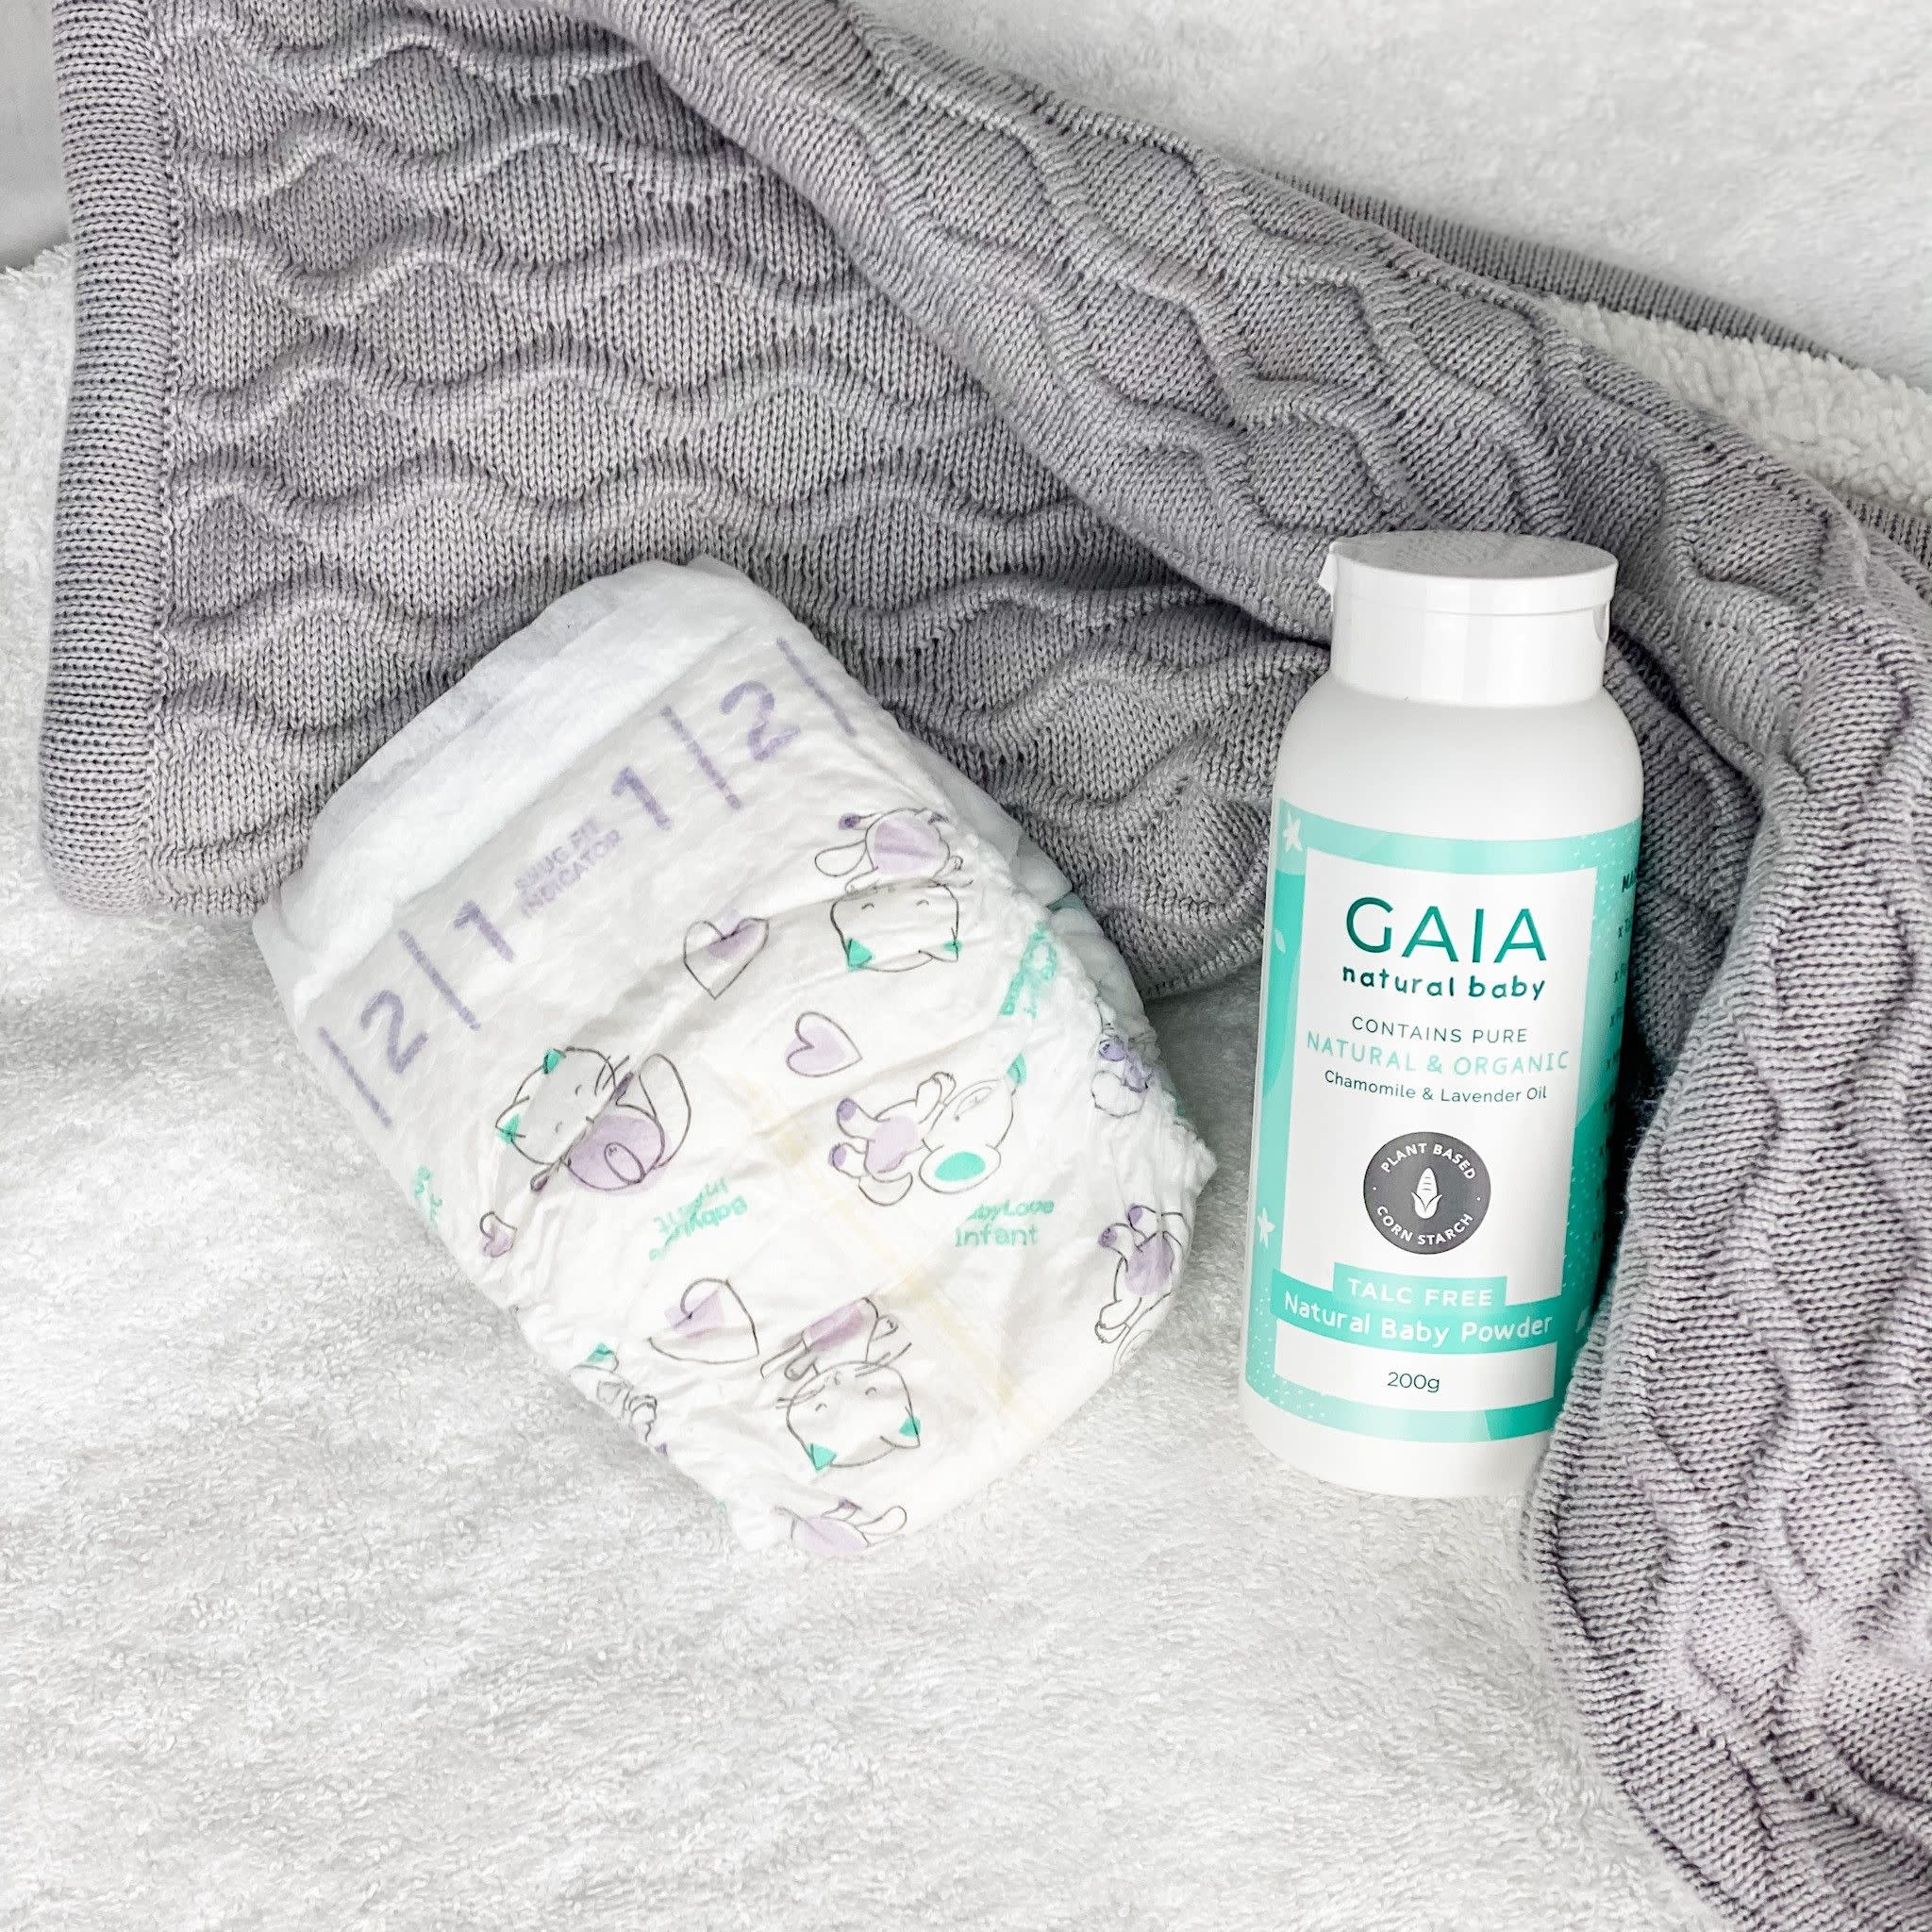 Gaia Gaia Natural Baby Powder 200g